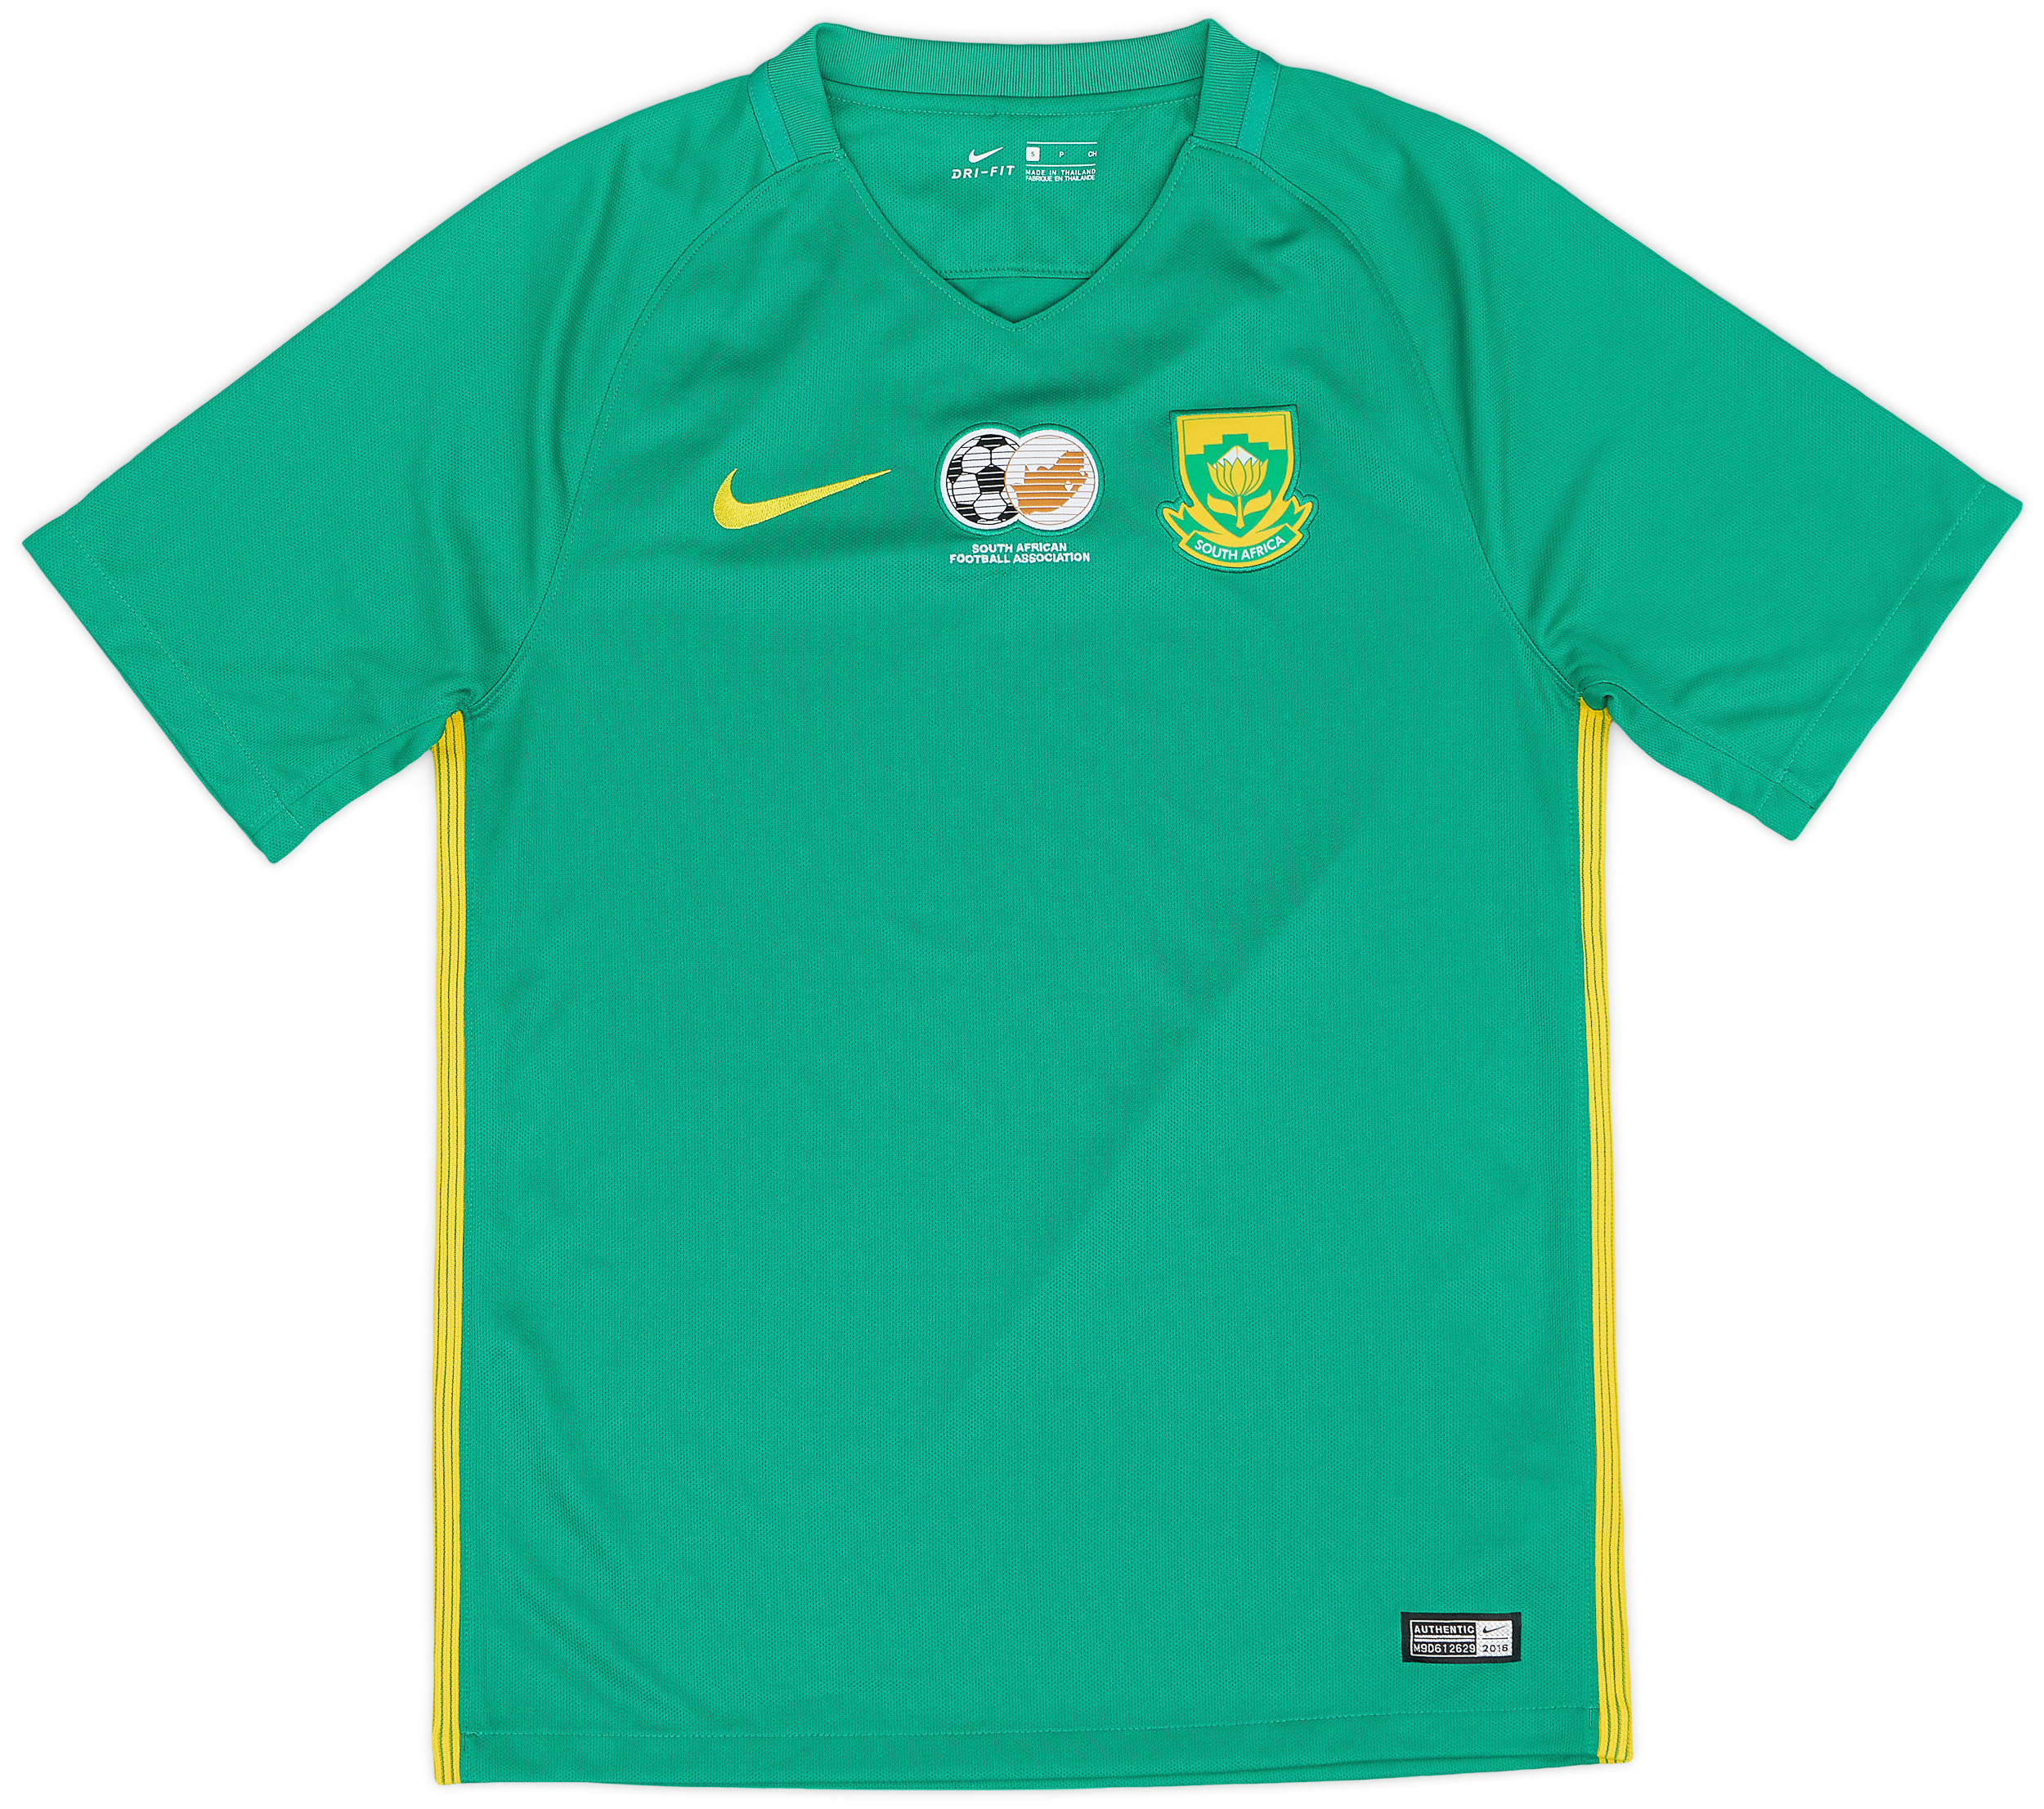 Retro South Africa Shirt